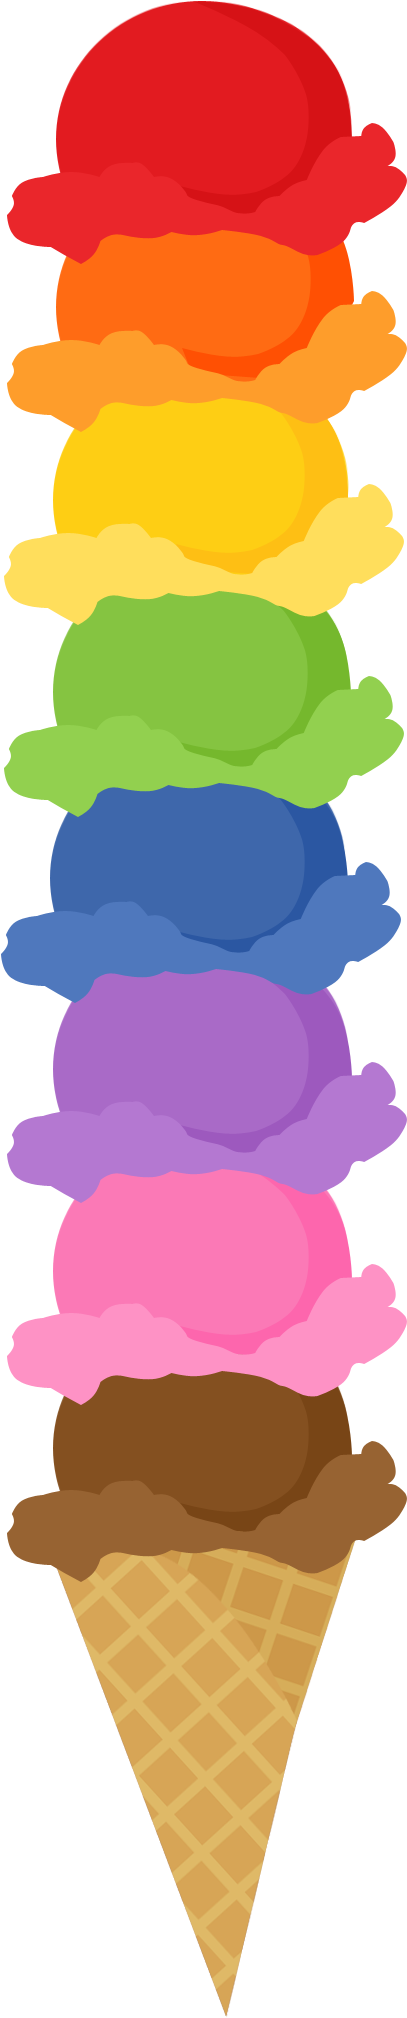 Cereal Clipart Rainbow - Blank Ice Cream Social Flyer (716x2100)